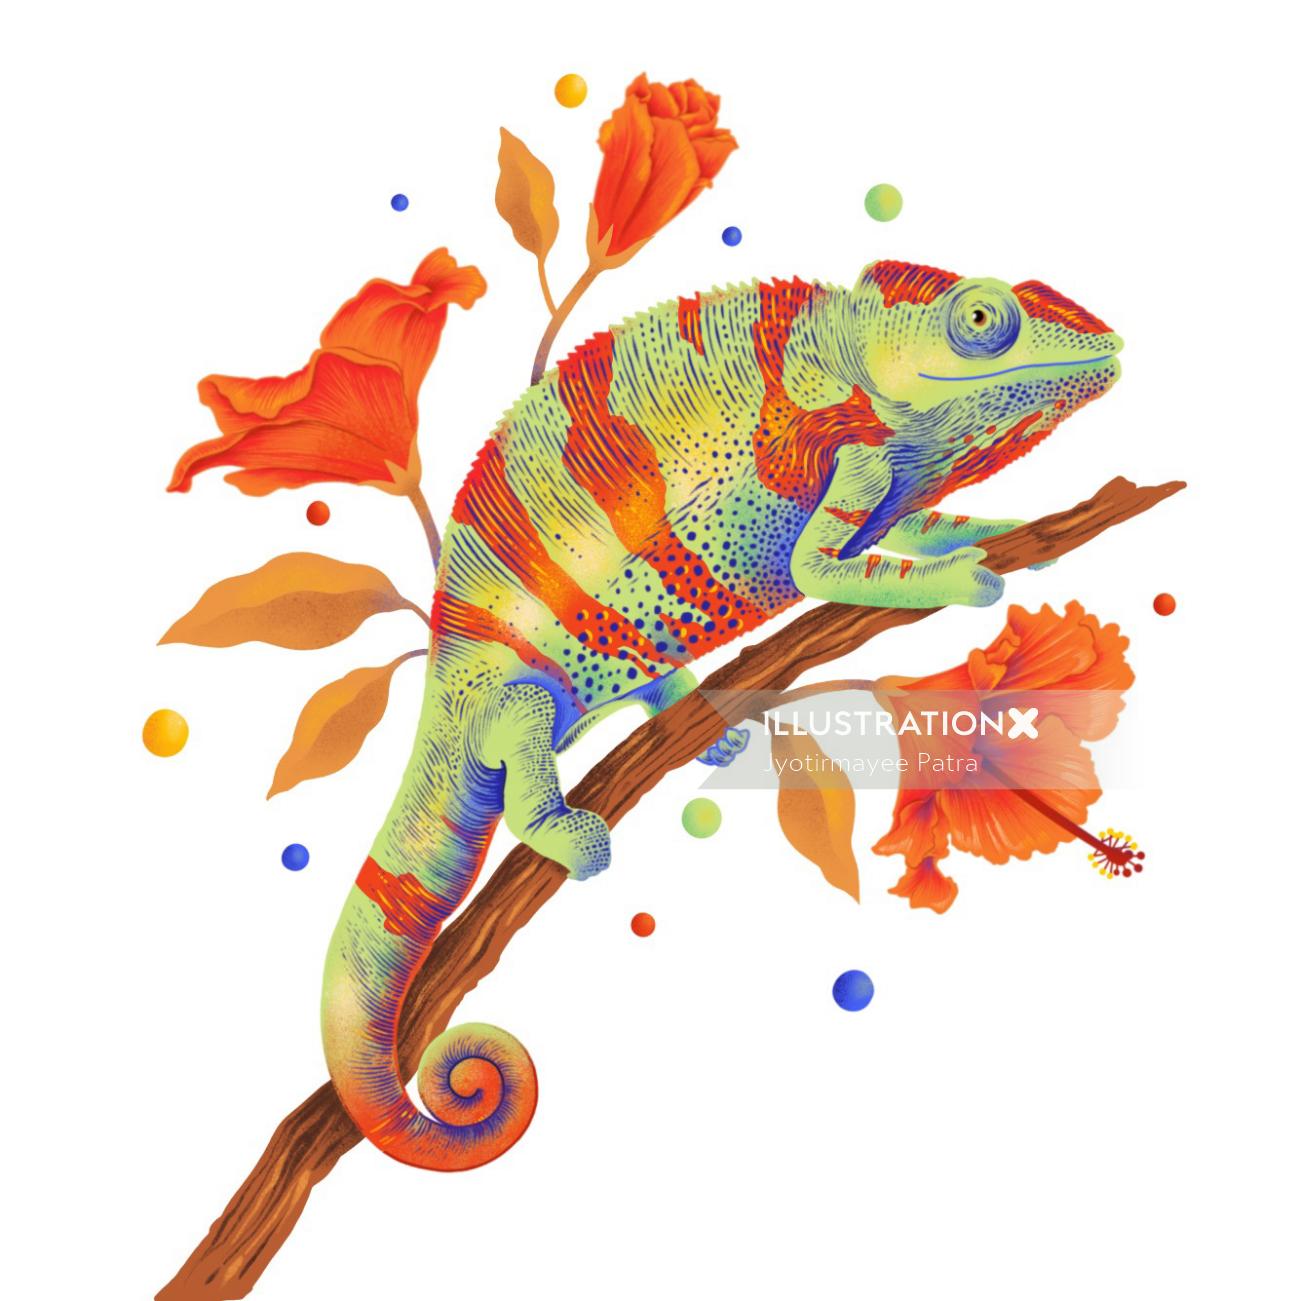 Ilustración de camaleón con colores vibrantes y texturas gráficas